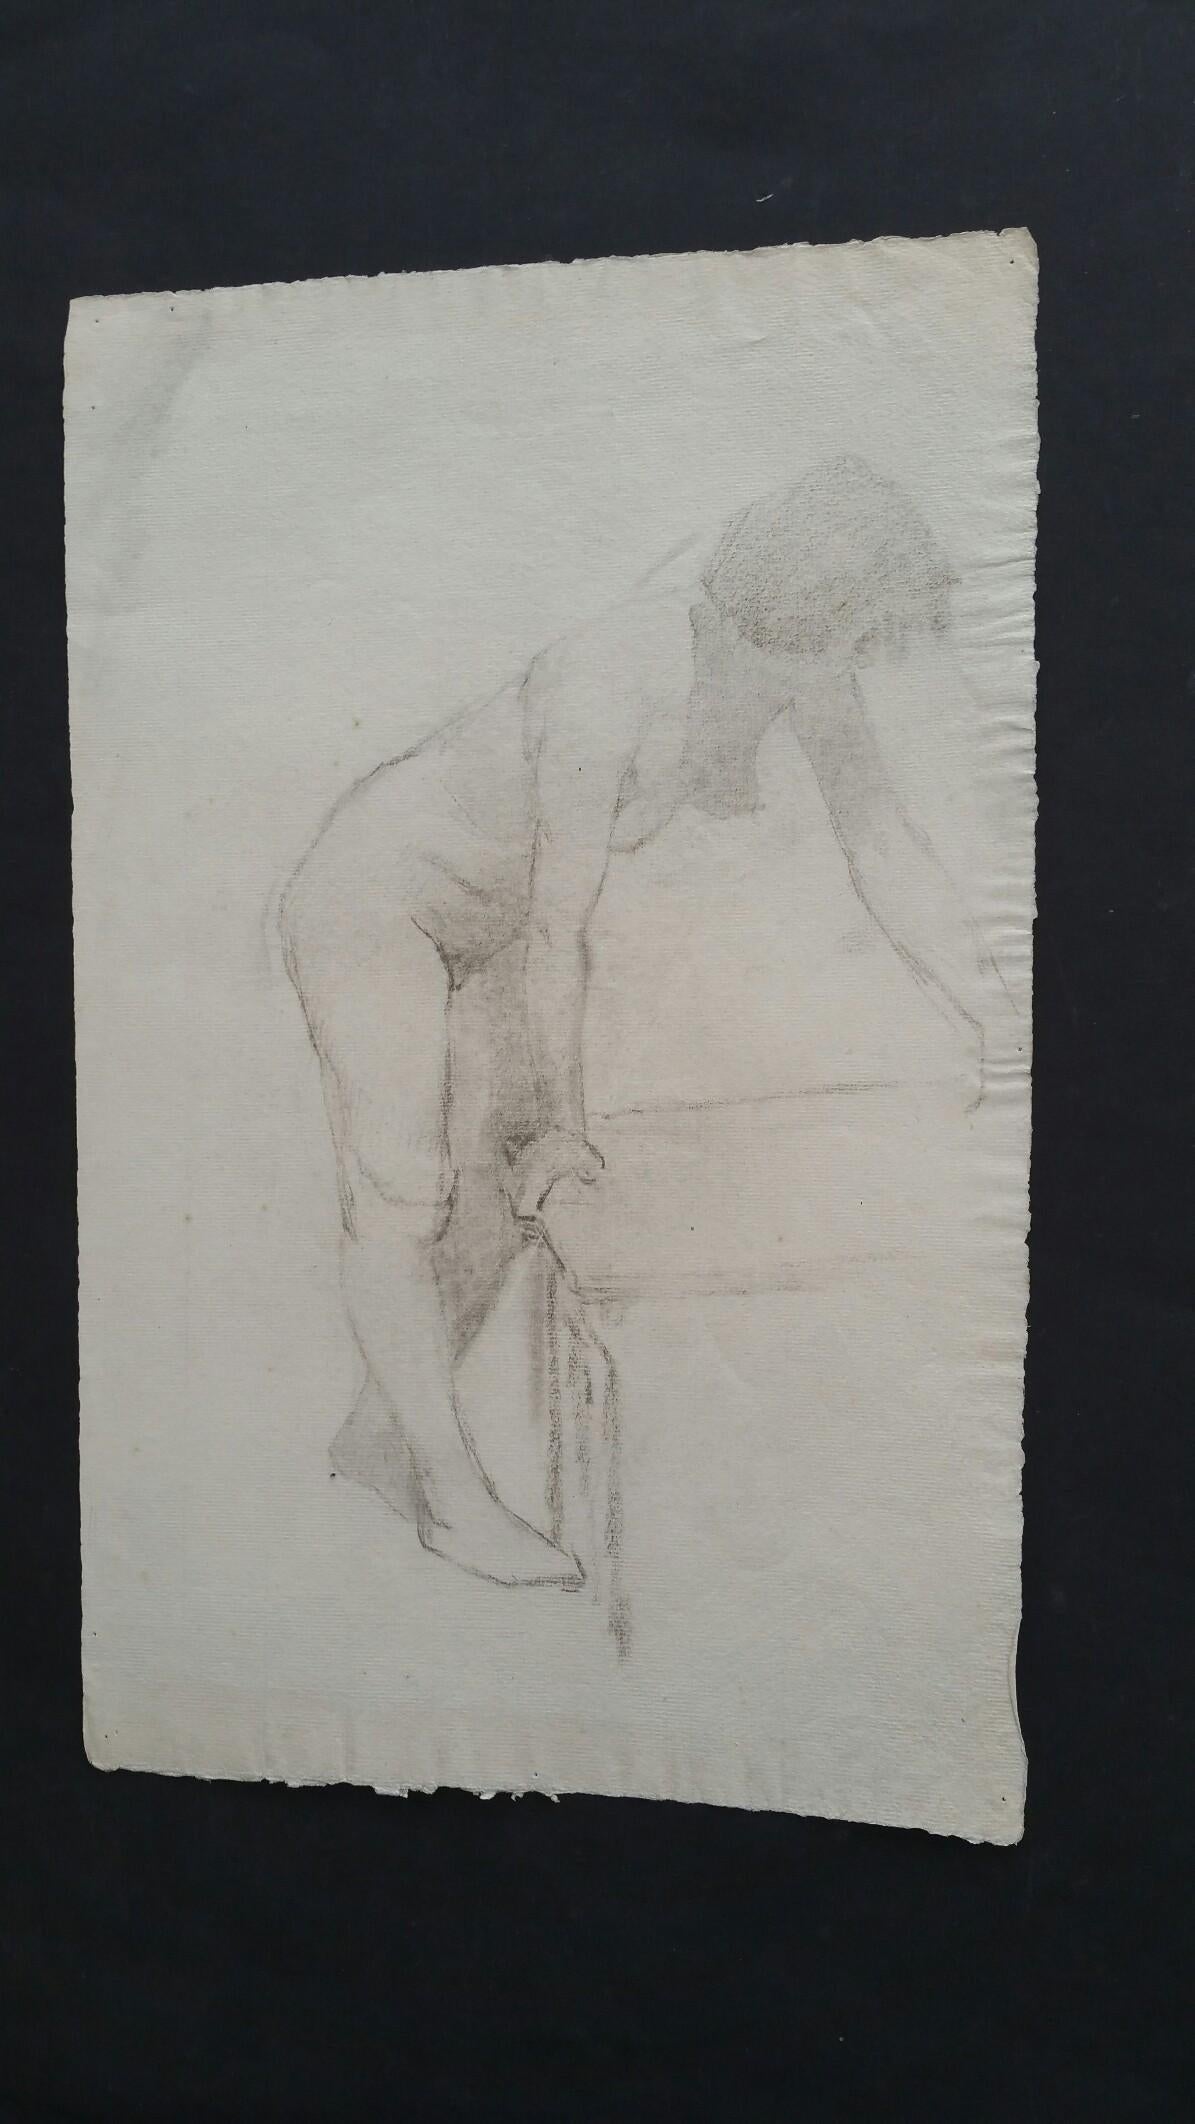 Esquisse à la mine de plomb anglaise d'une femme nue, penchée.
par Henry George Moon (britannique, 1857-1905).
sur papier d'artiste blanc cassé, non encadré.
mesures : feuille 18.25 x 11.5 pouces.

Provenance : de la succession de